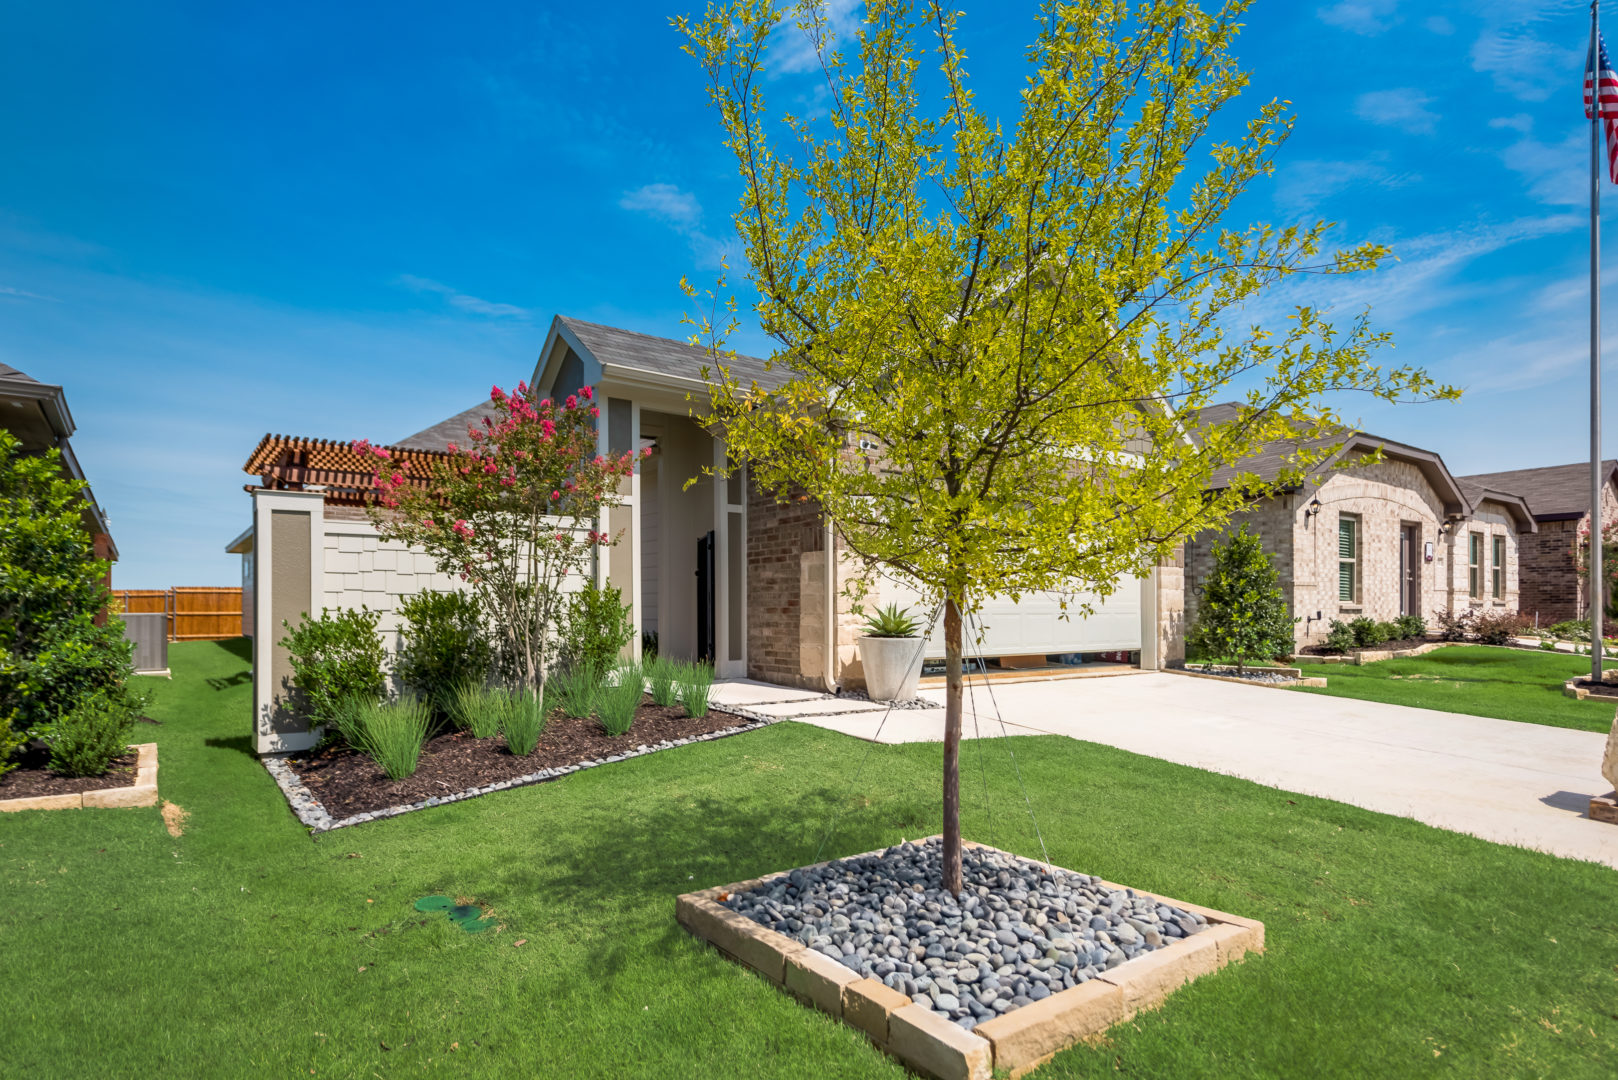 Aubrey Creek Estates new homes in Aubrey, TX